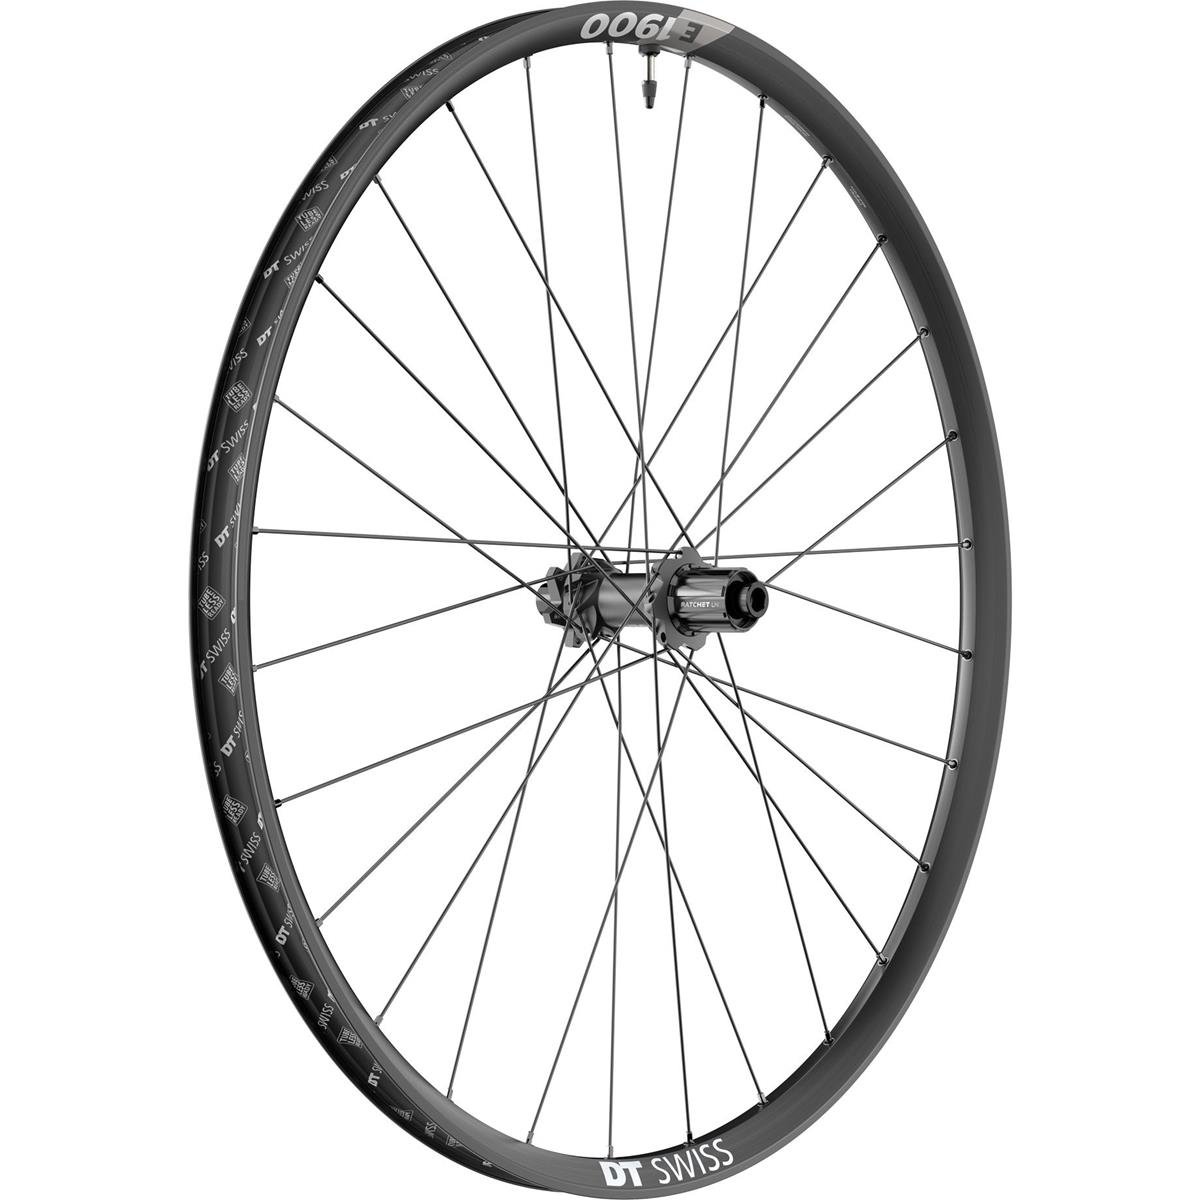 DT Swiss Wheel E 1900 Spline Rear, 27.5 Inches, Aluminum, 12x148 mm TA Boost, IS 6-Bolt, Shim 11, 30 mm